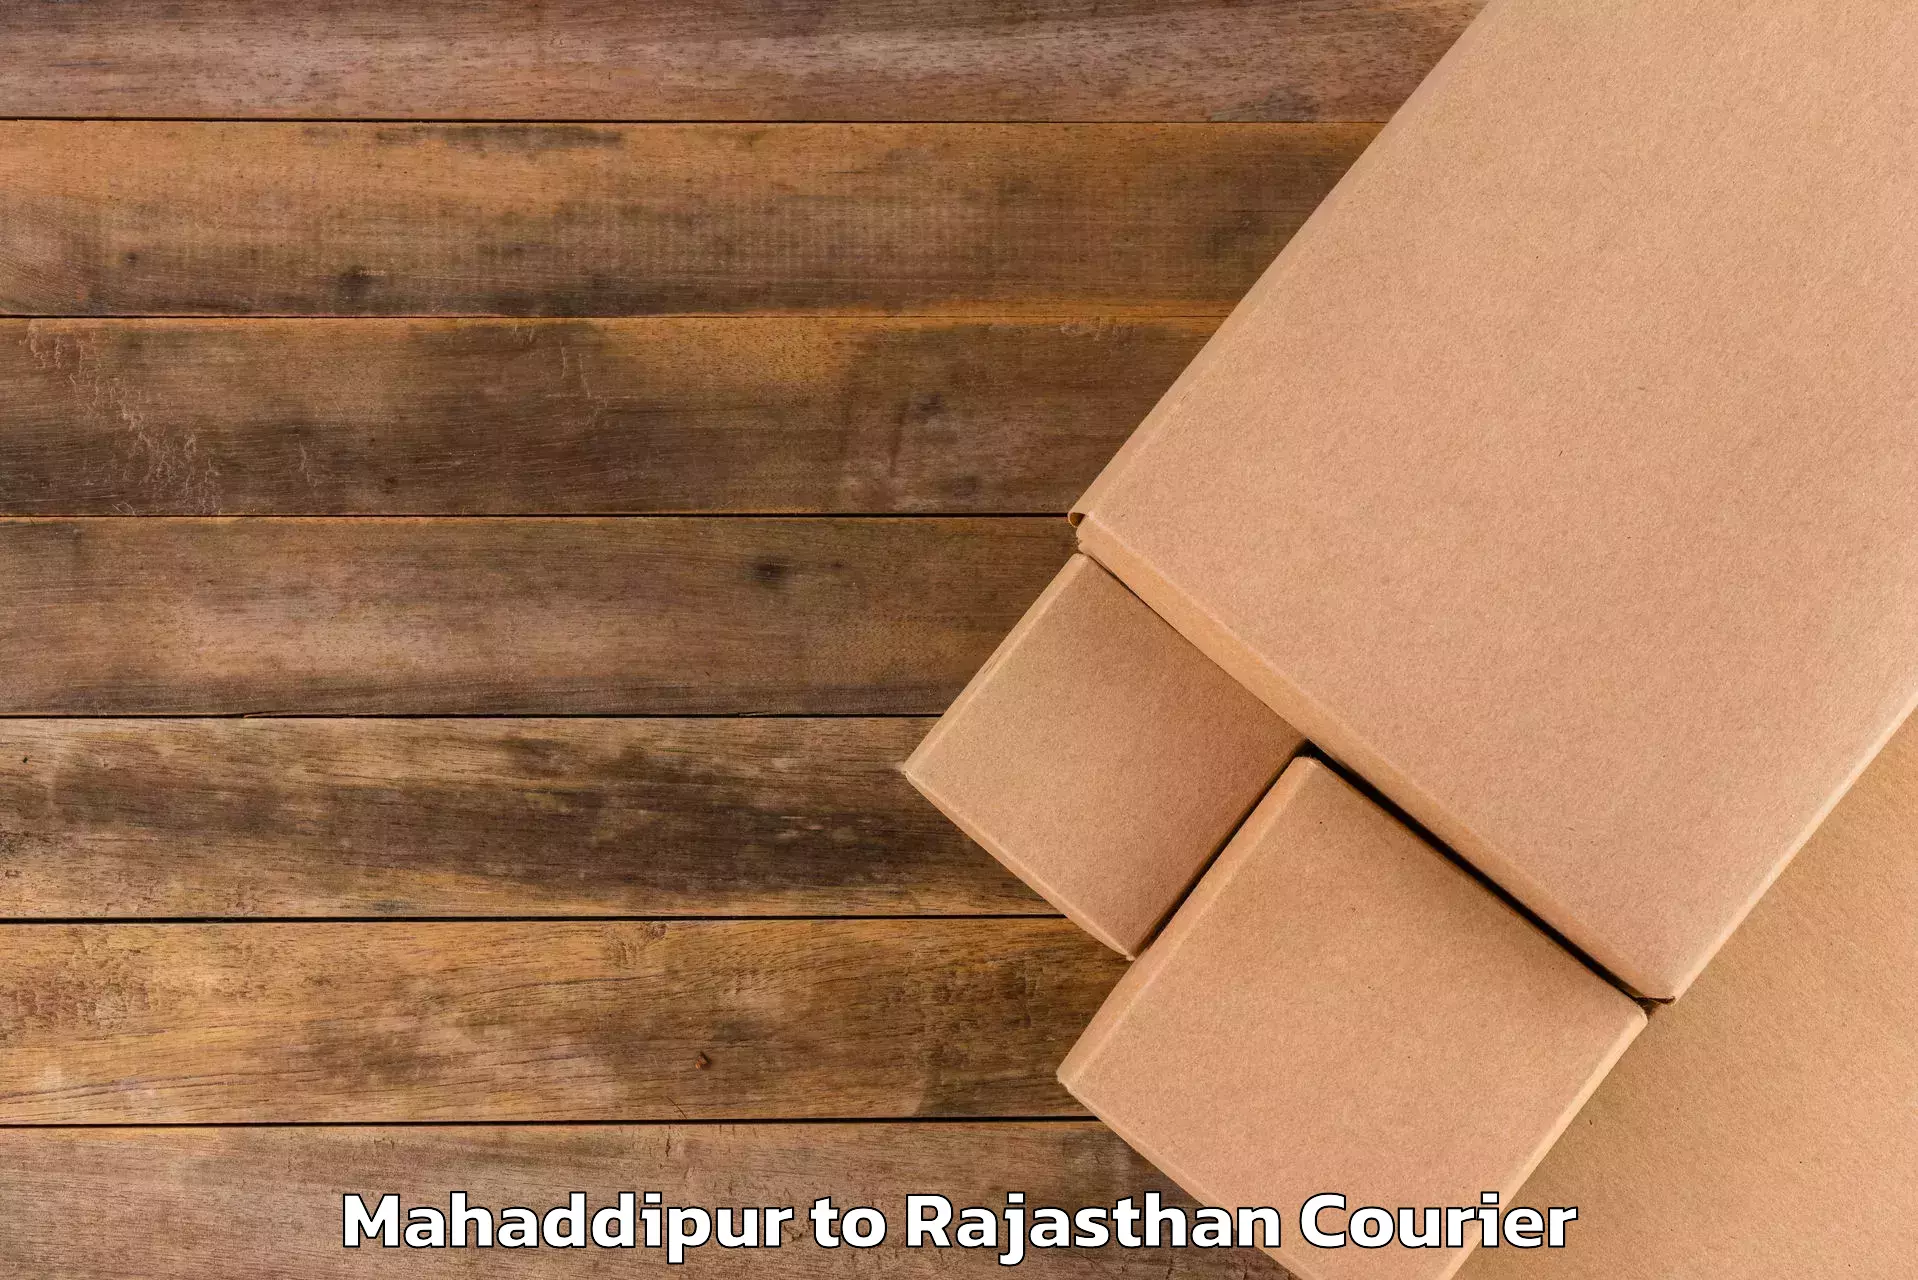 Urgent luggage shipment Mahaddipur to Tonk